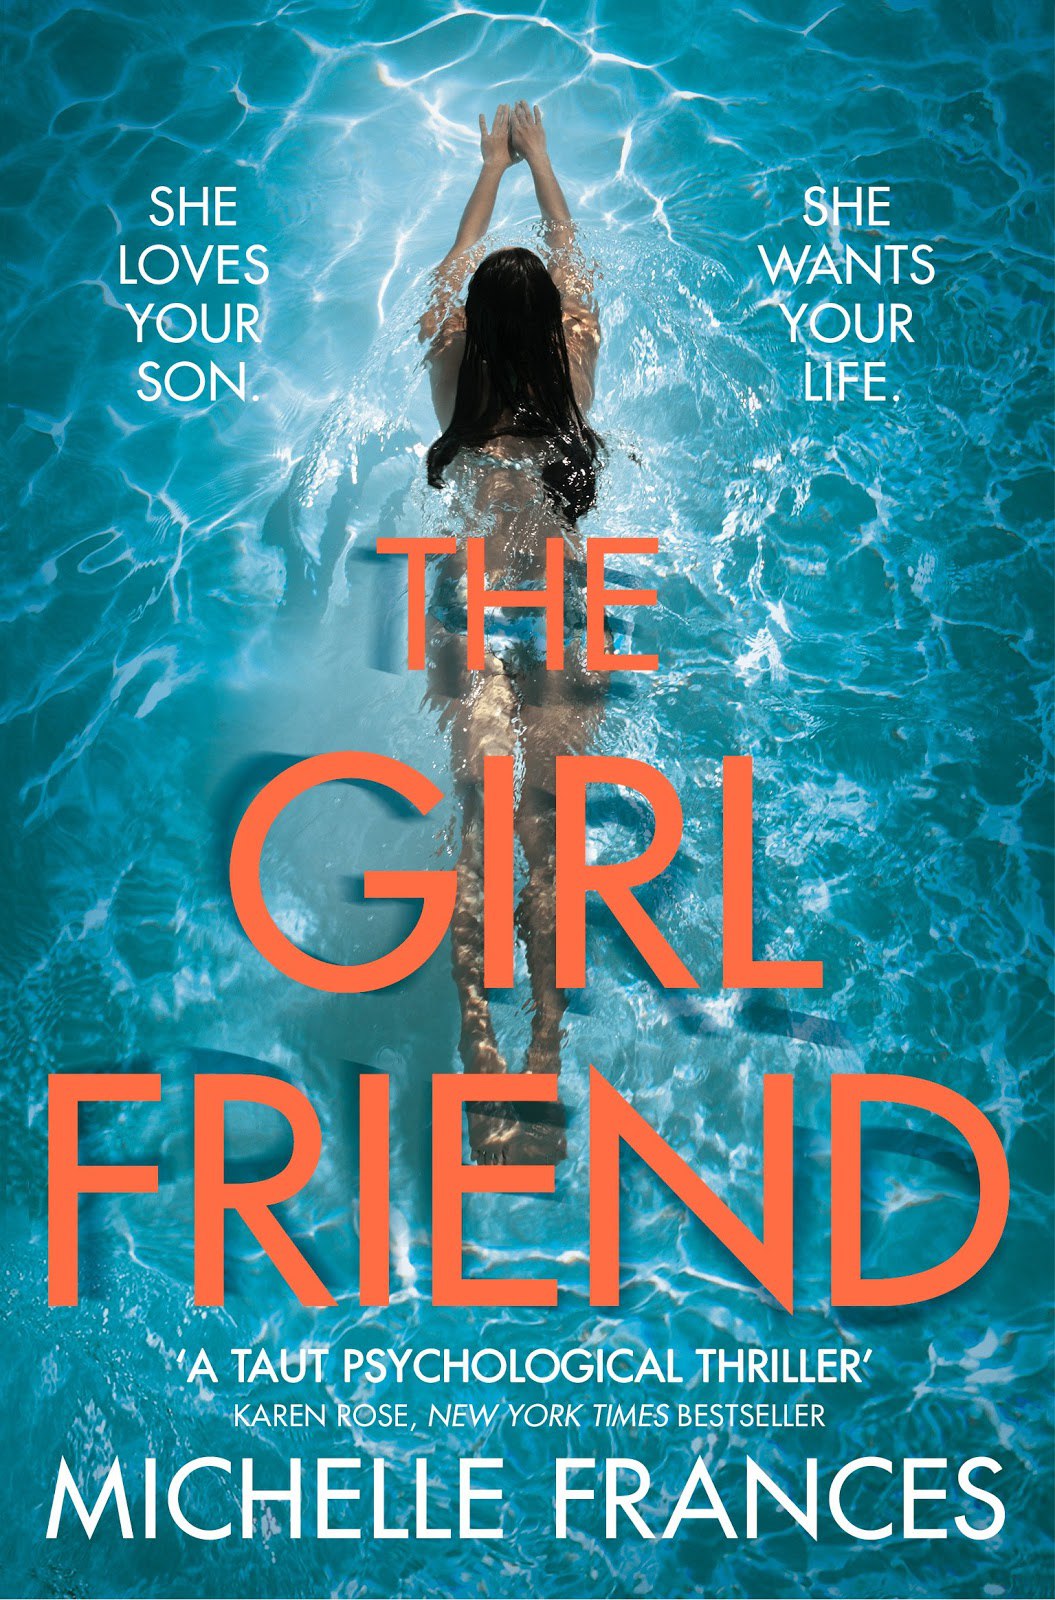 Michelle Frances – The Girlfriend